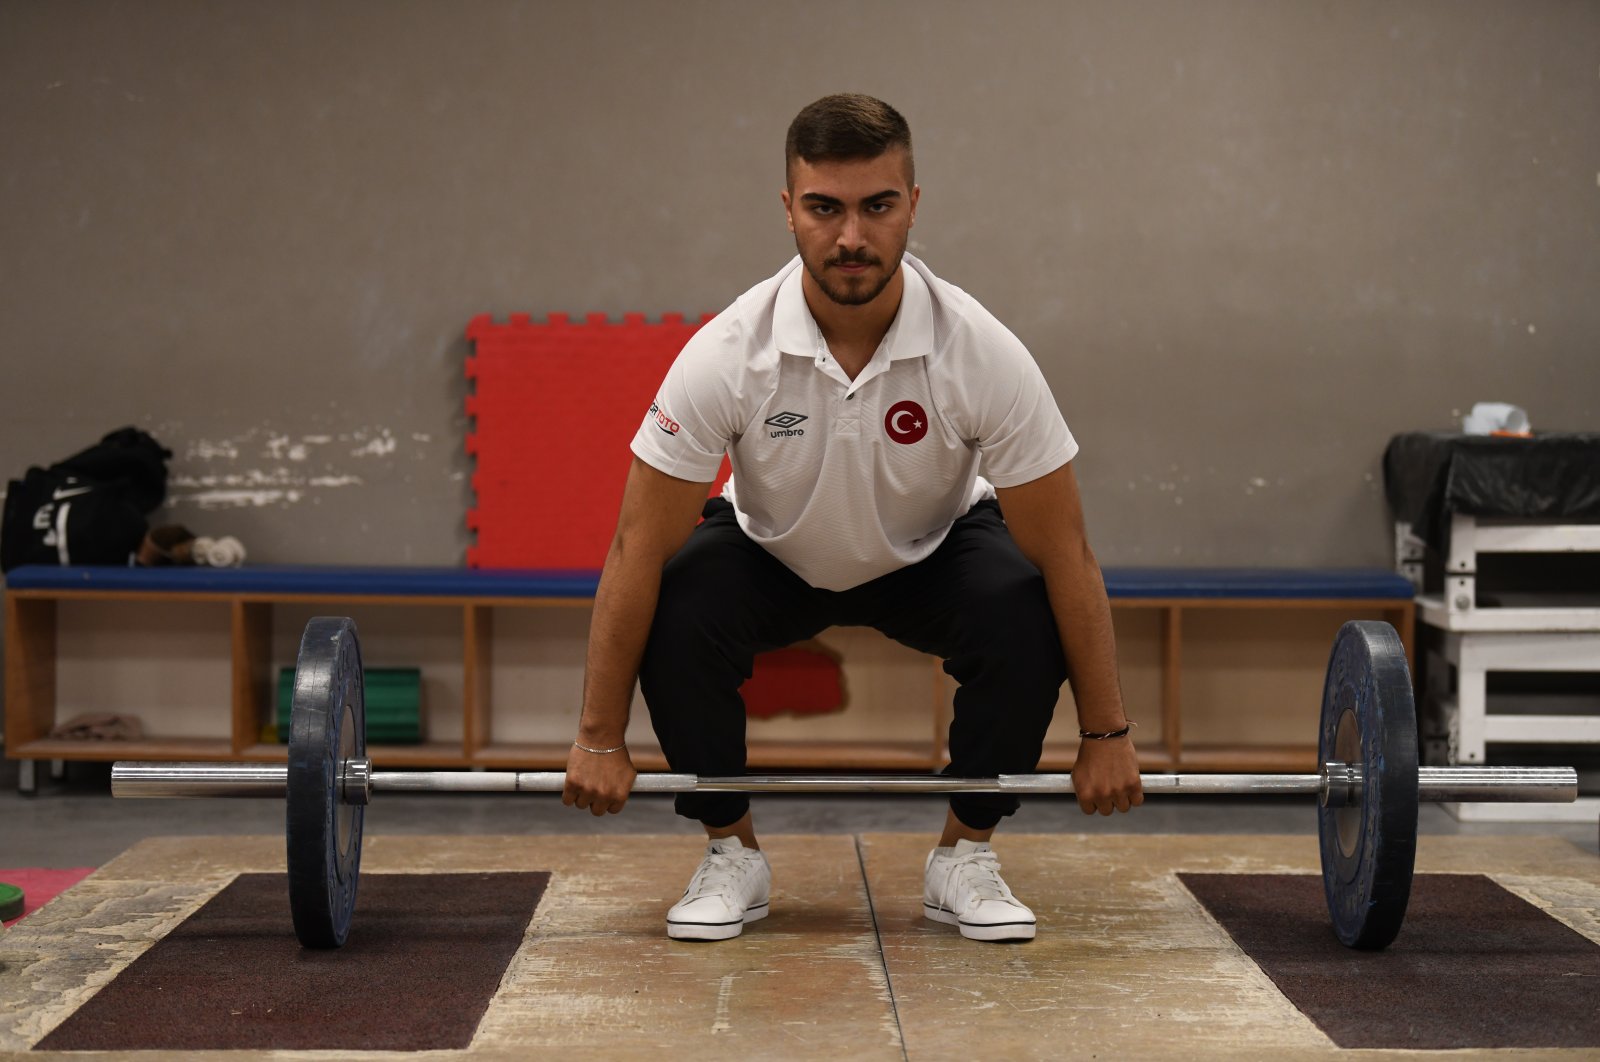 Menimbang dalam keluarga: Atlet angkat besi peraih medali emas Turki menetapkan standar yang tinggi